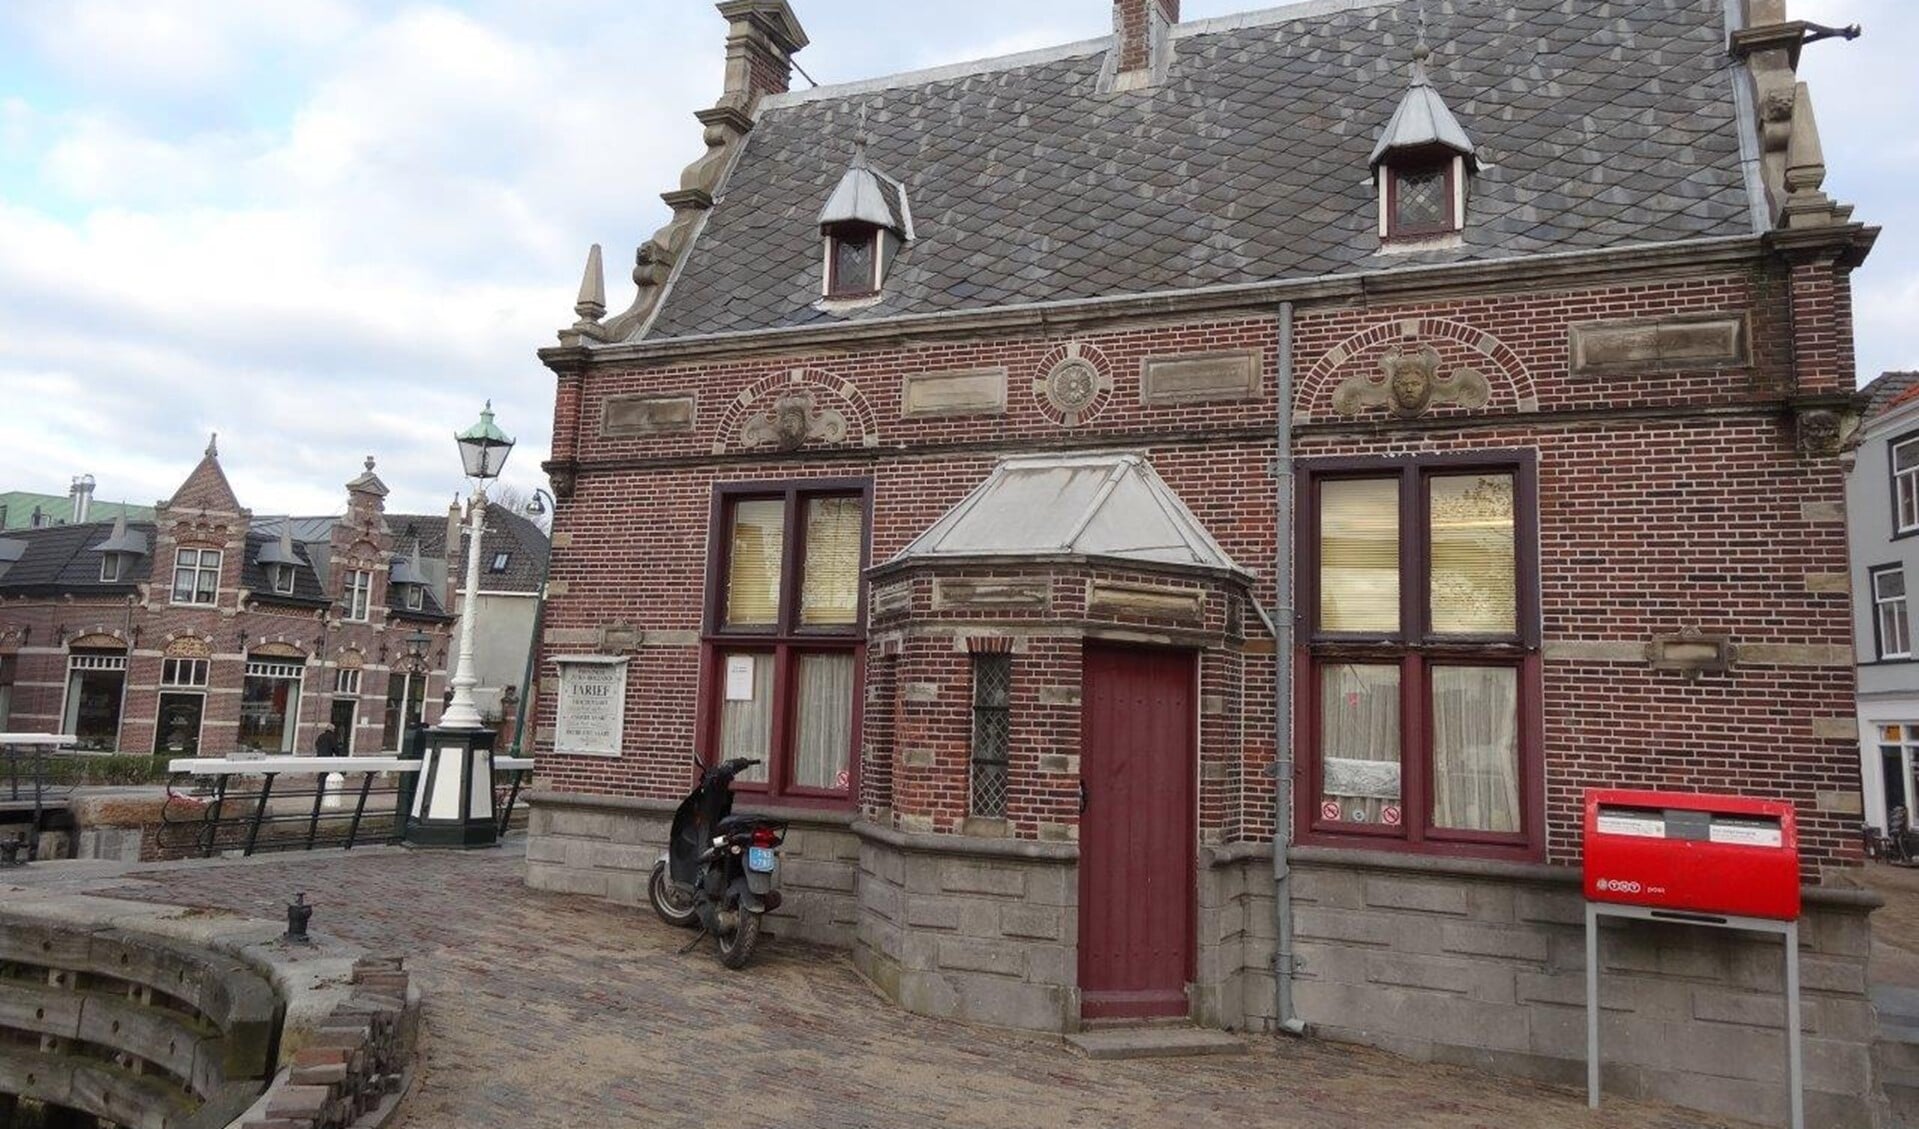 Het de laatste jaren enigszins verwaarloosde sluiswachtershuisje aan de sluis in Leidschendam (foto: Ap de Heus).